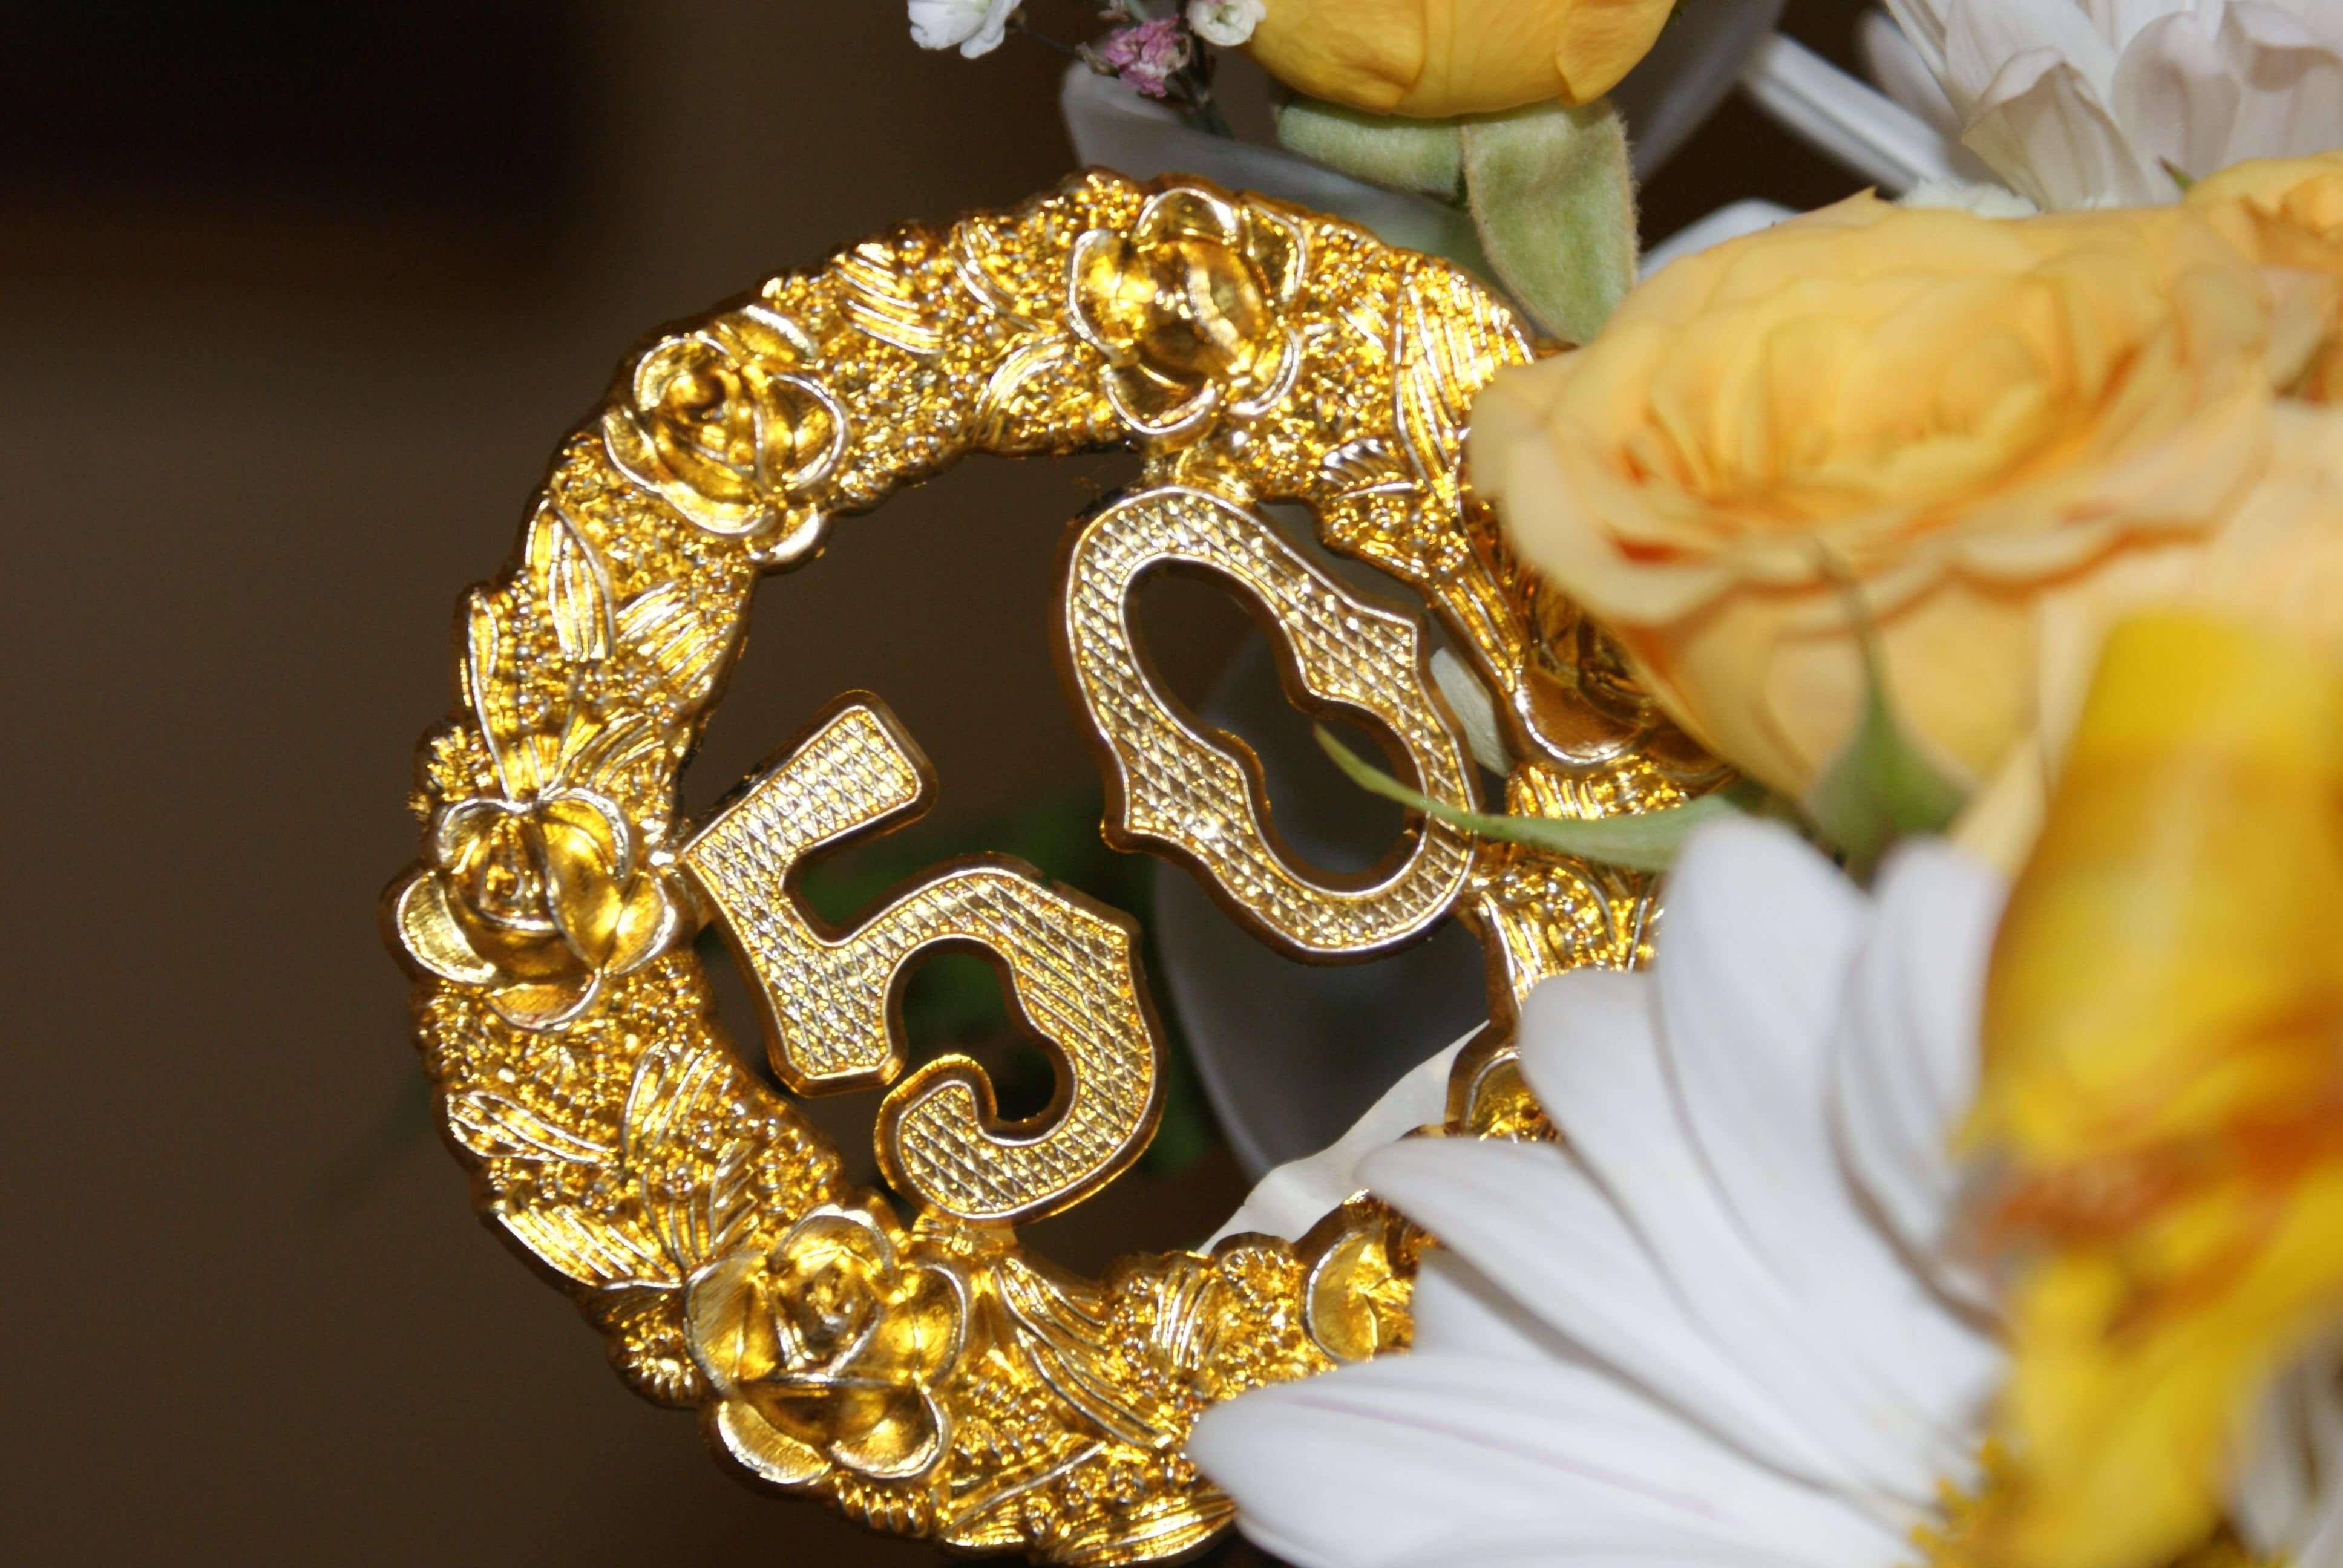 Поздравления с годовщиной свадьбы 50 лет (золотая свадьба)